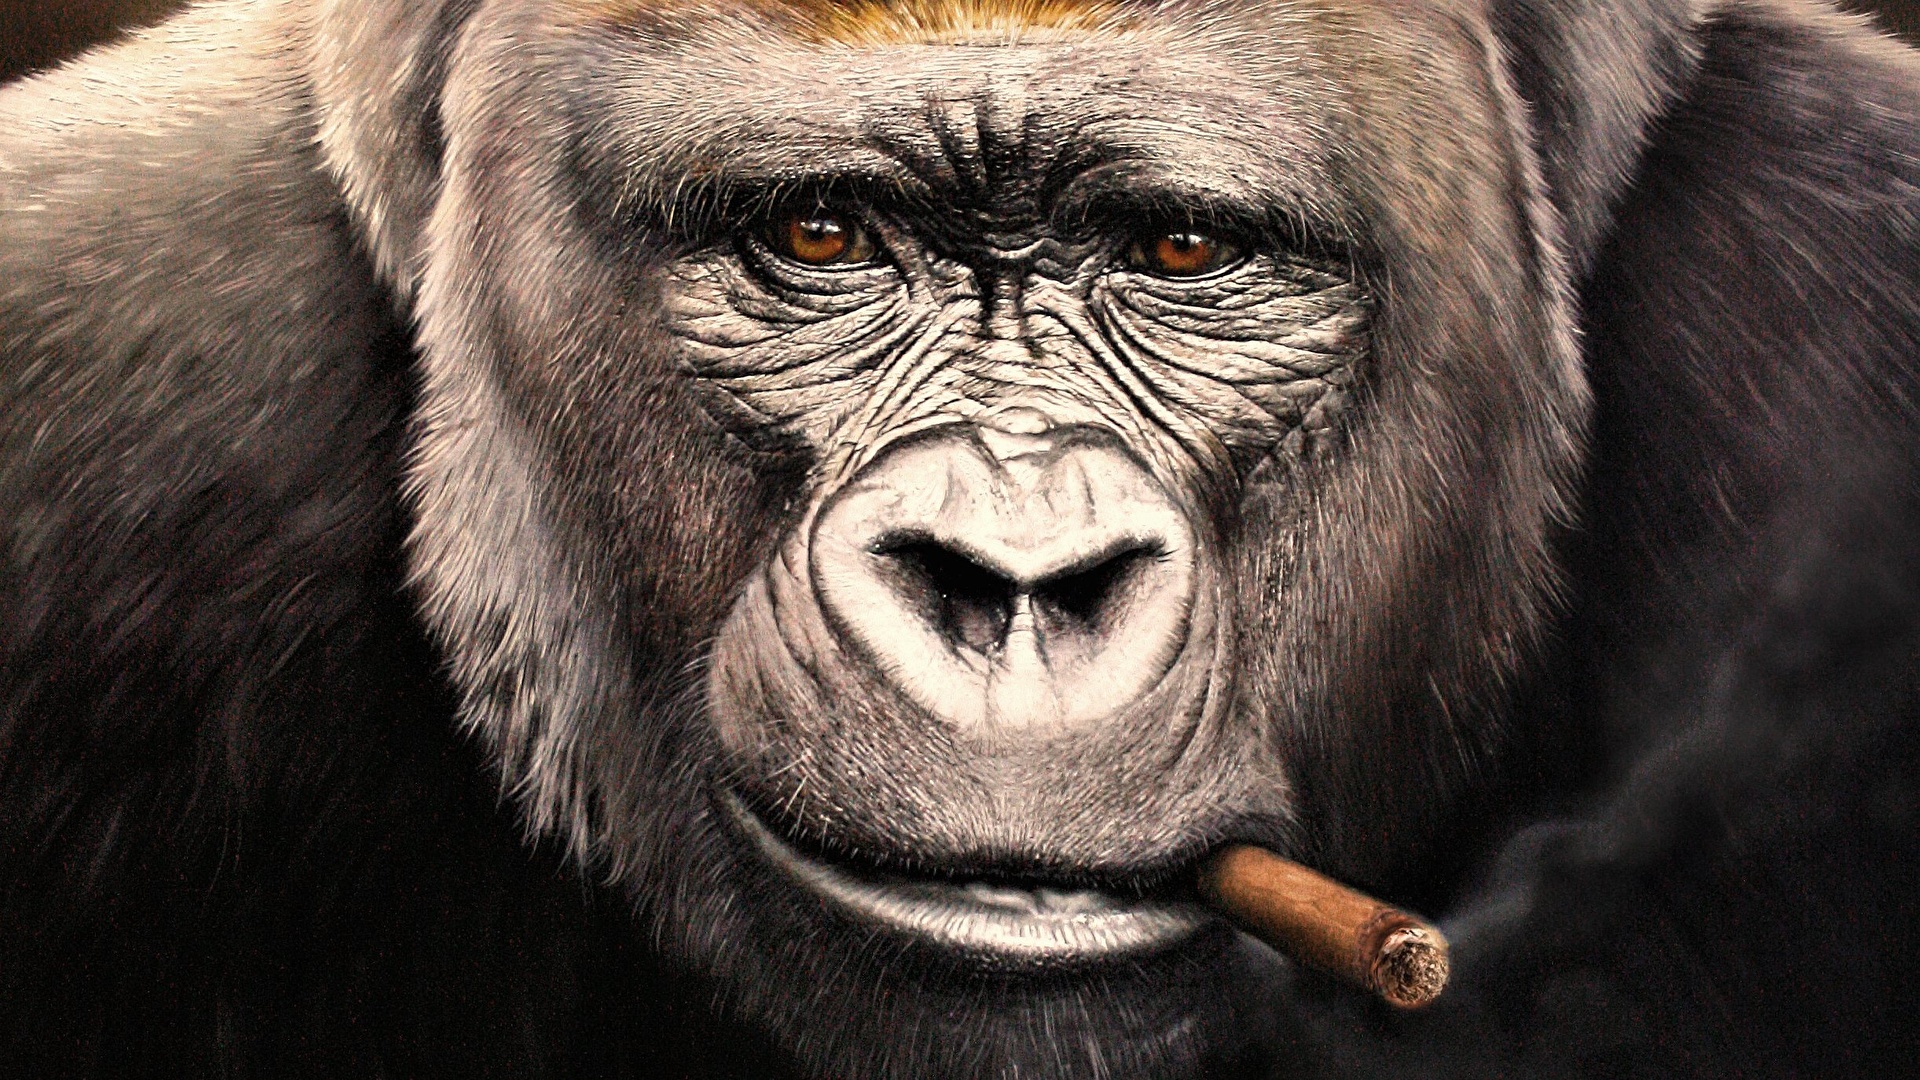 壁紙 19x1080 サル Gorilla 動物のスナウト 凝視 葉巻 顔 動物 ダウンロード 写真